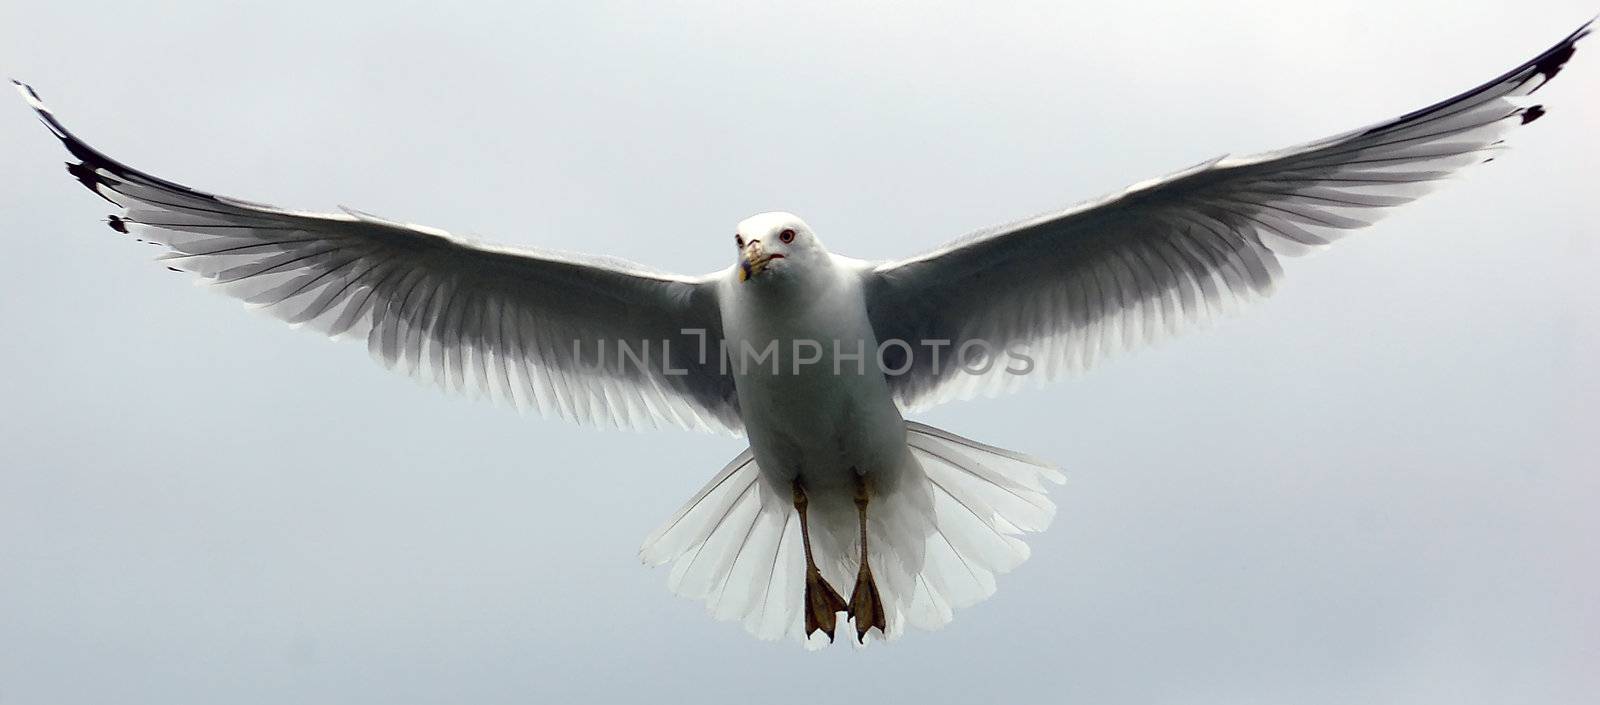 Seagul in flight by nialat